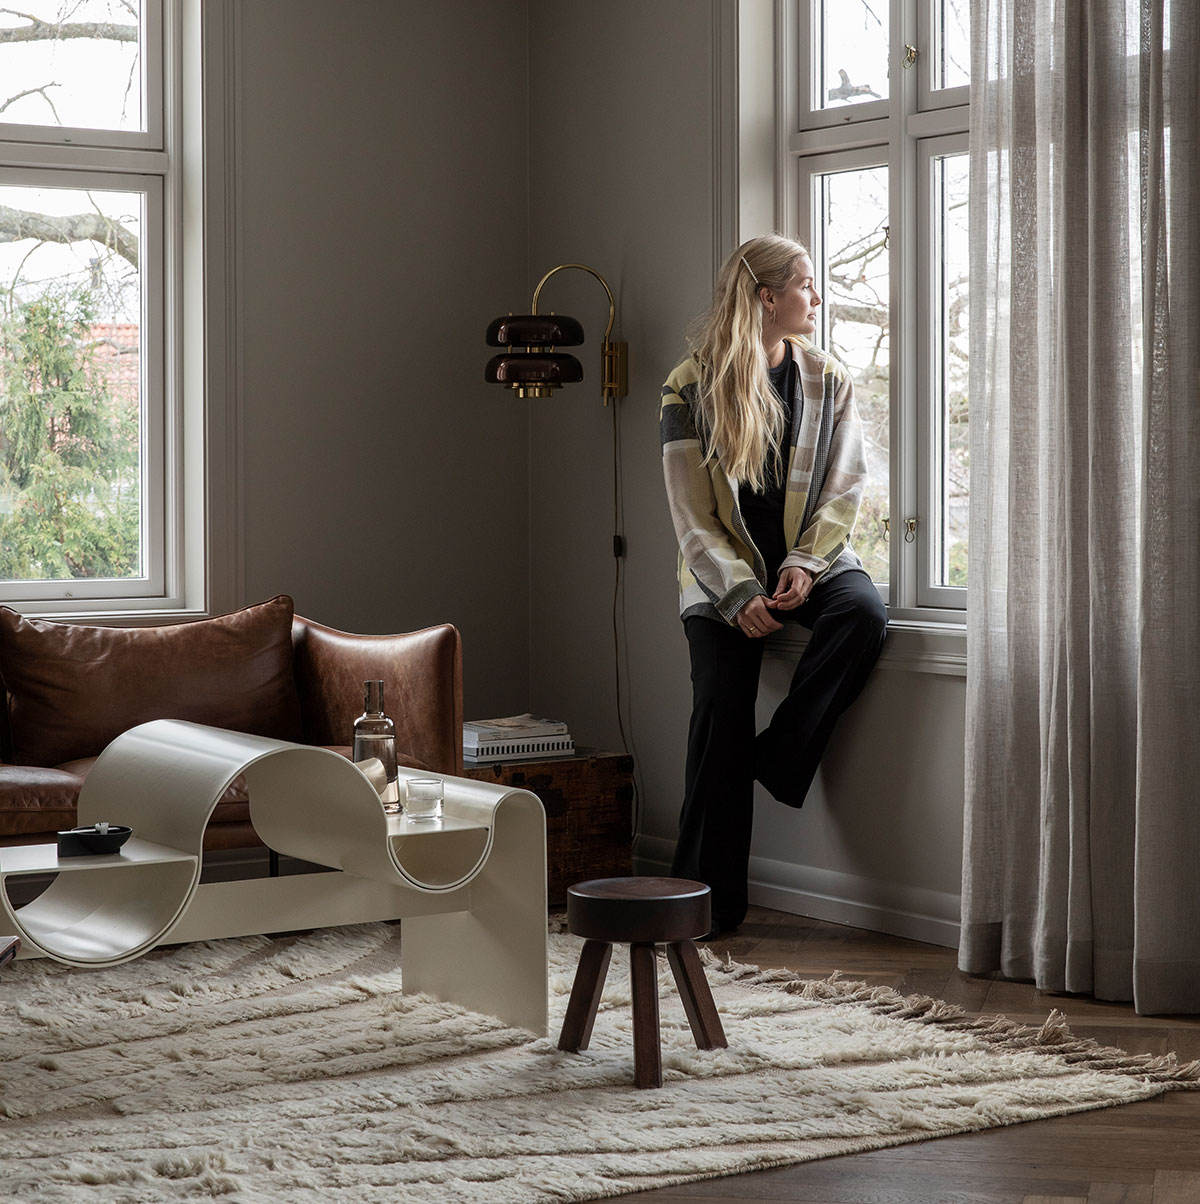 Спокойный и элегантный современный интерьер дома дизайнера одежды в Осло